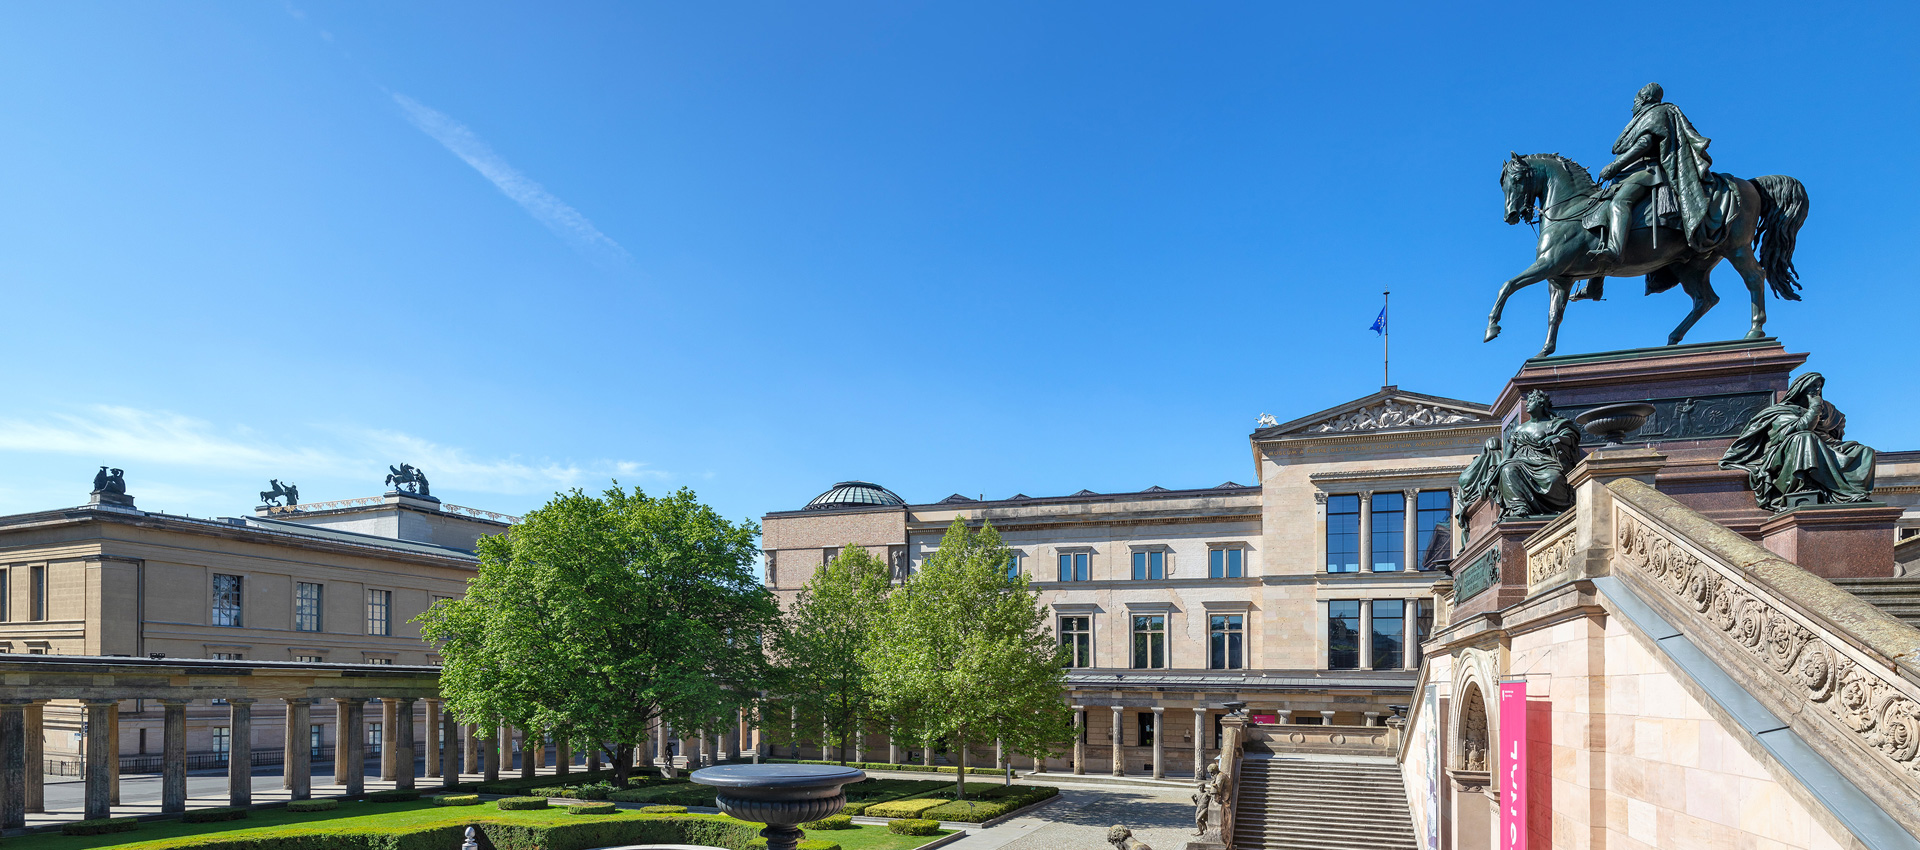 Blick auf einen Kolonnadenhof, Museumsgebäude, Reiterfigur und Treppe